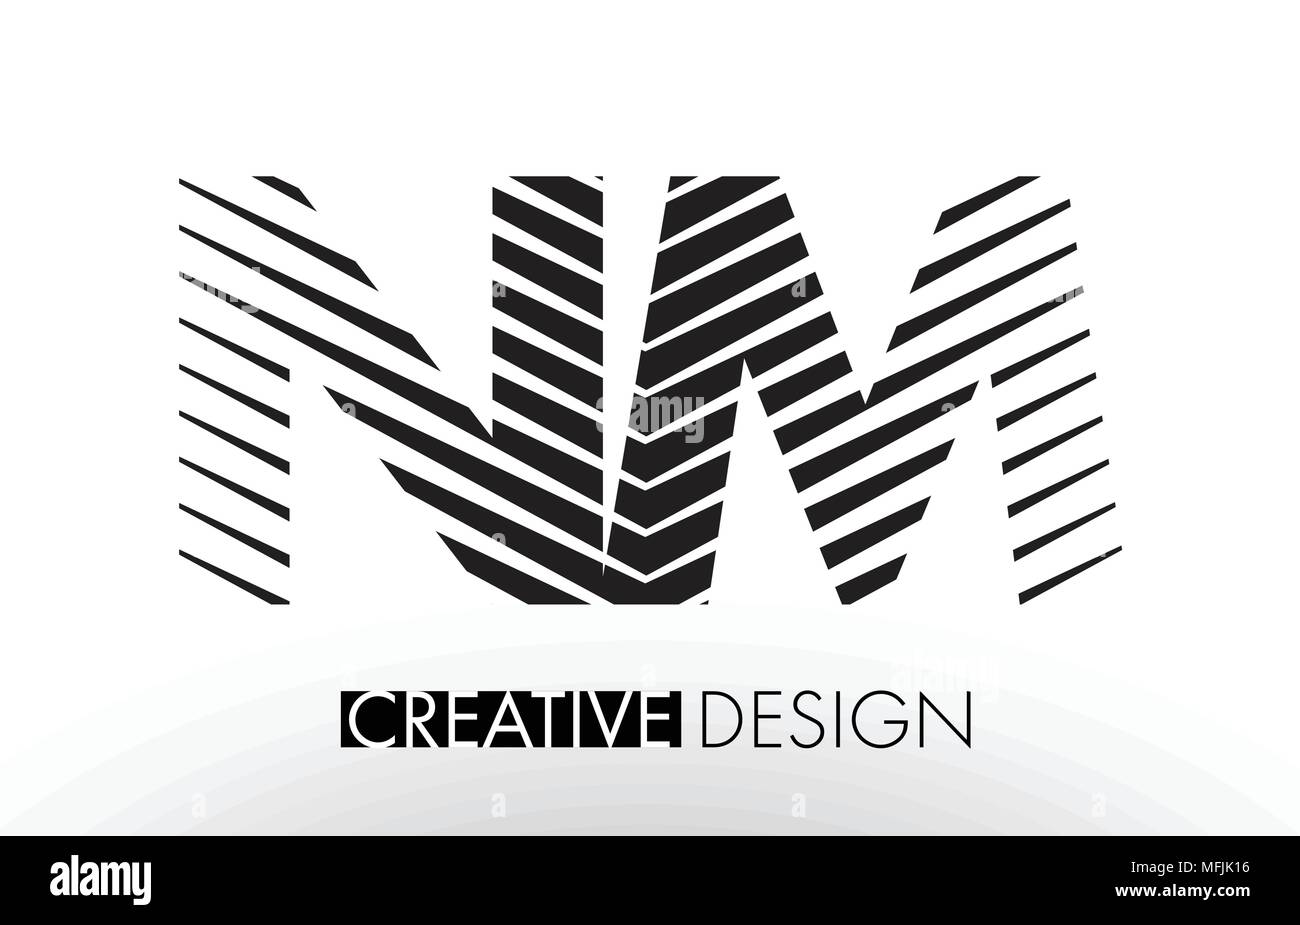 NM N M linee Lettera con design elegante Creative Zebra illustrazione vettoriale. Illustrazione Vettoriale